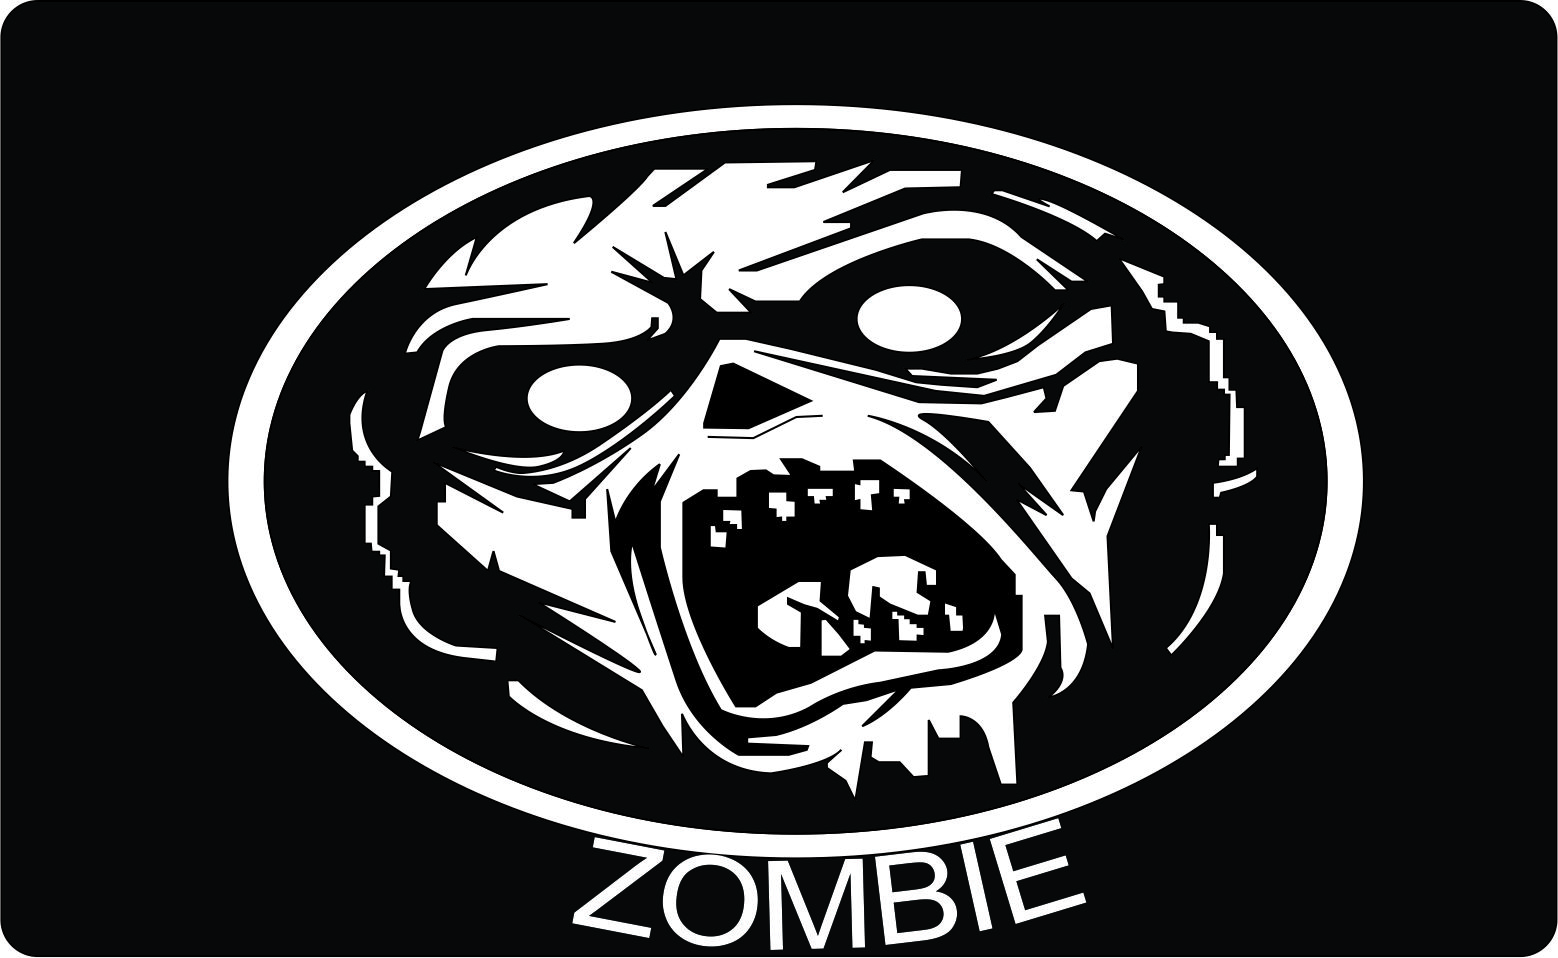 Logo Zombie Graphic Design